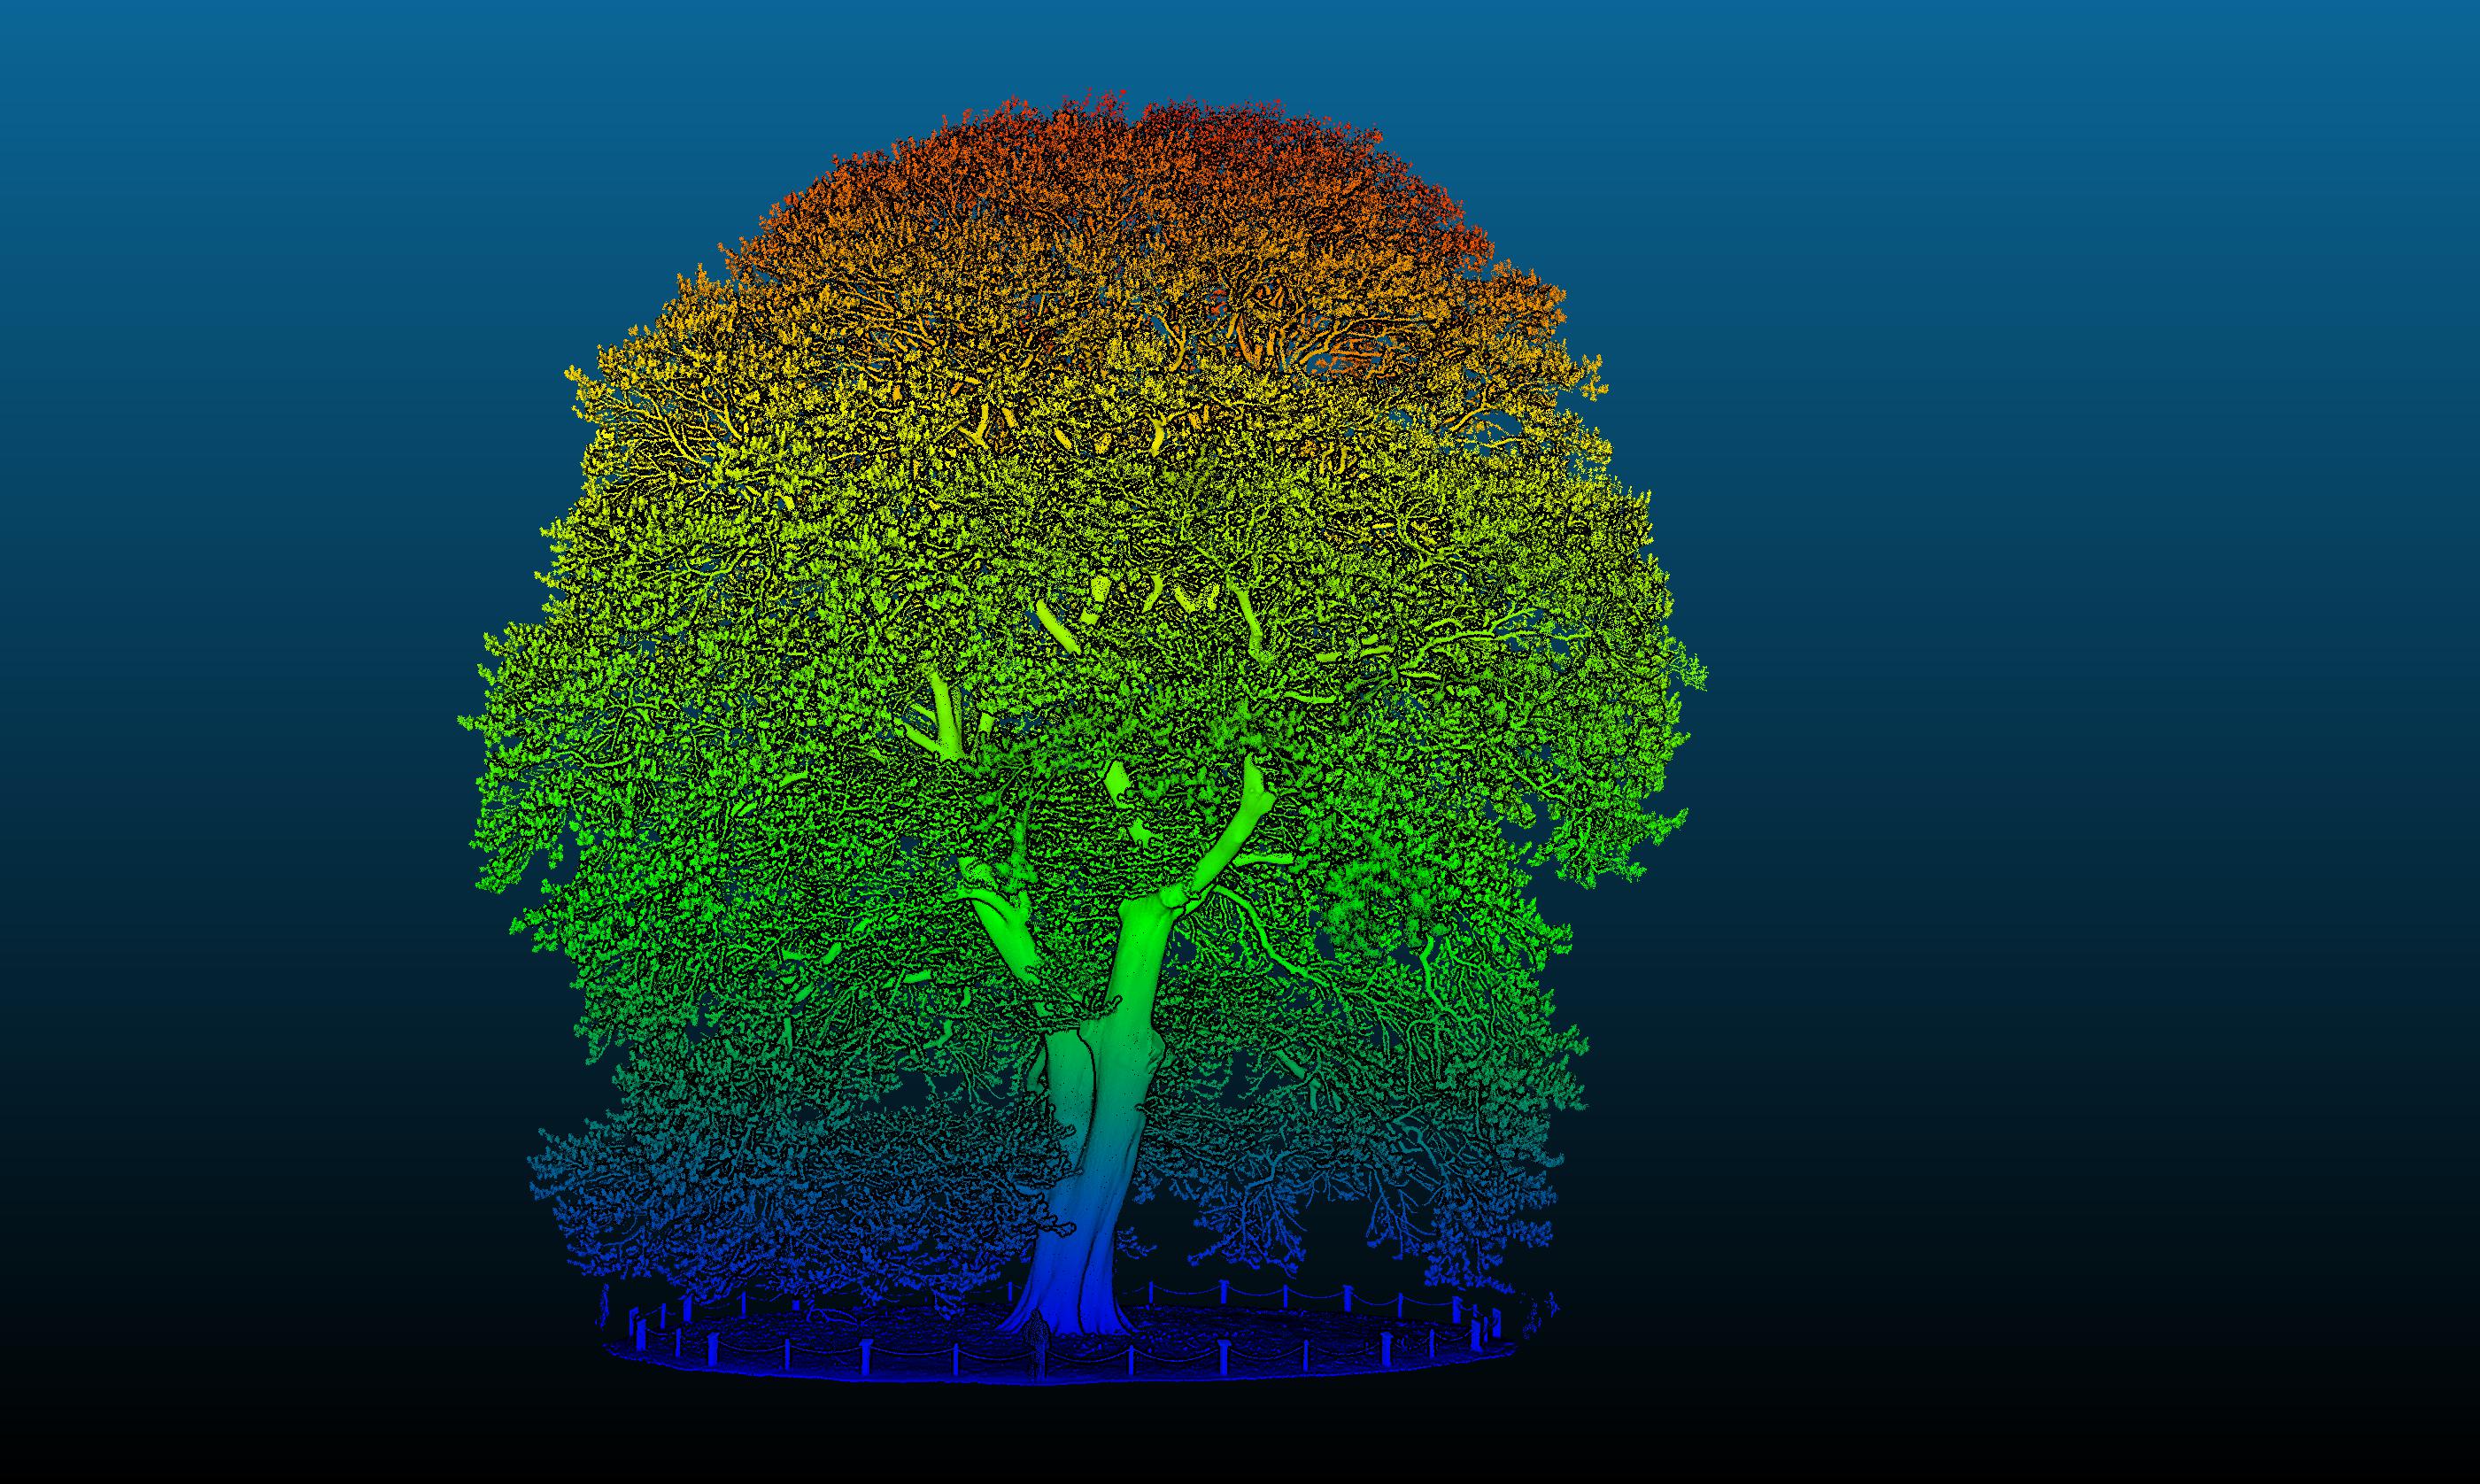 One of Kew's biggest trees under a LiDar scanner